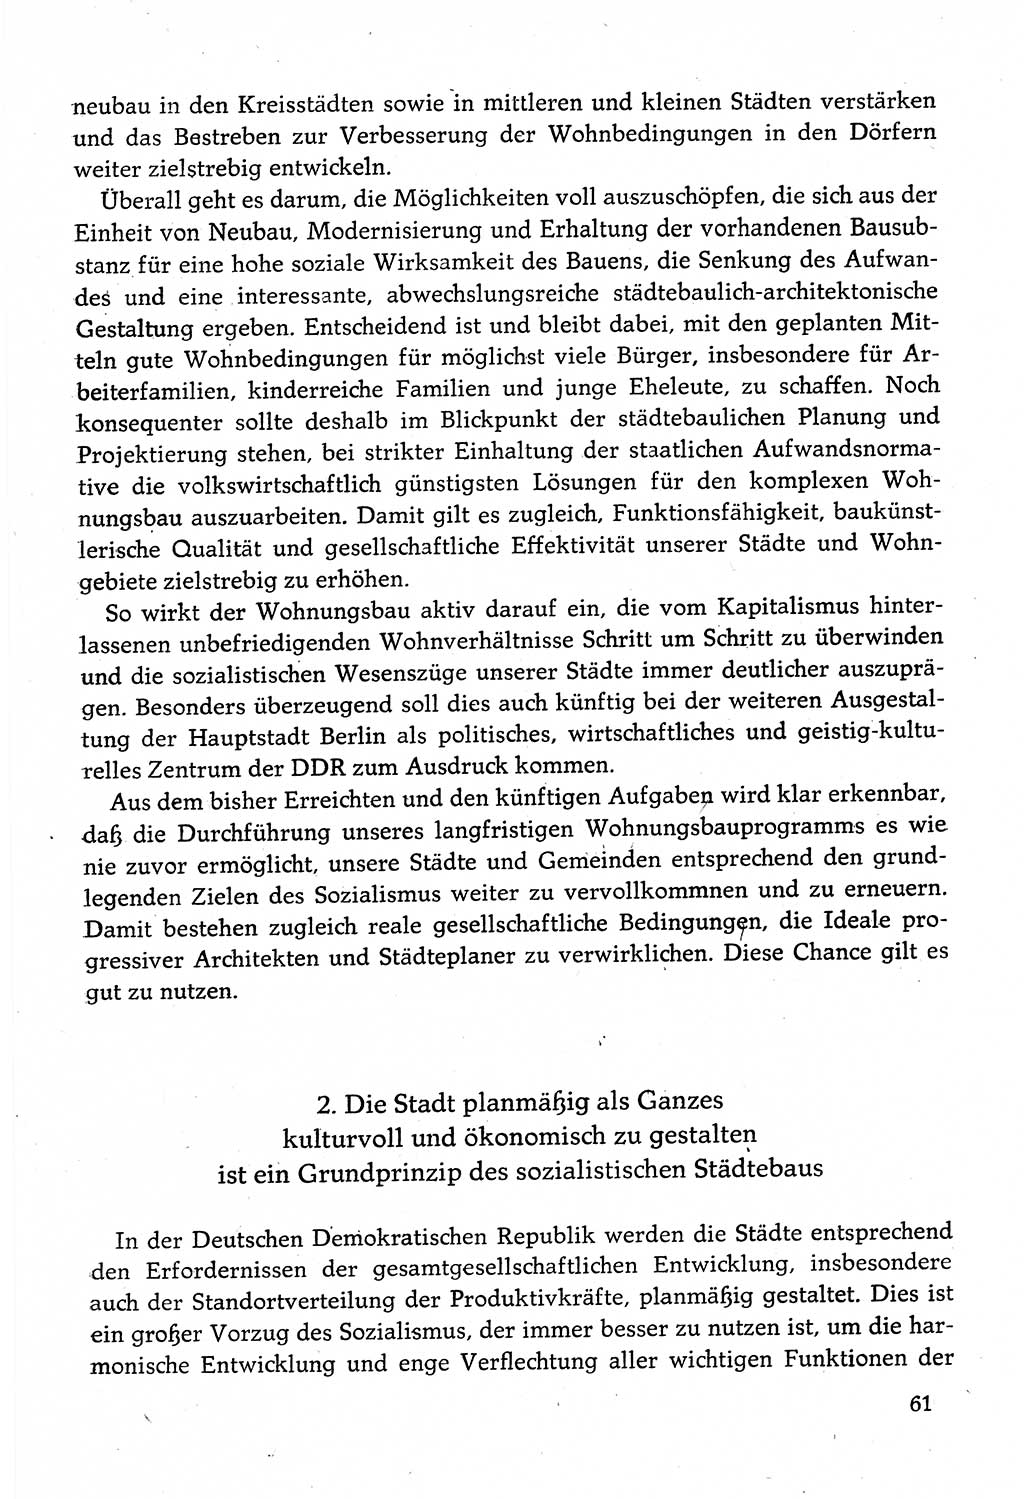 Dokumente der Sozialistischen Einheitspartei Deutschlands (SED) [Deutsche Demokratische Republik (DDR)] 1982-1983, Seite 61 (Dok. SED DDR 1982-1983, S. 61)